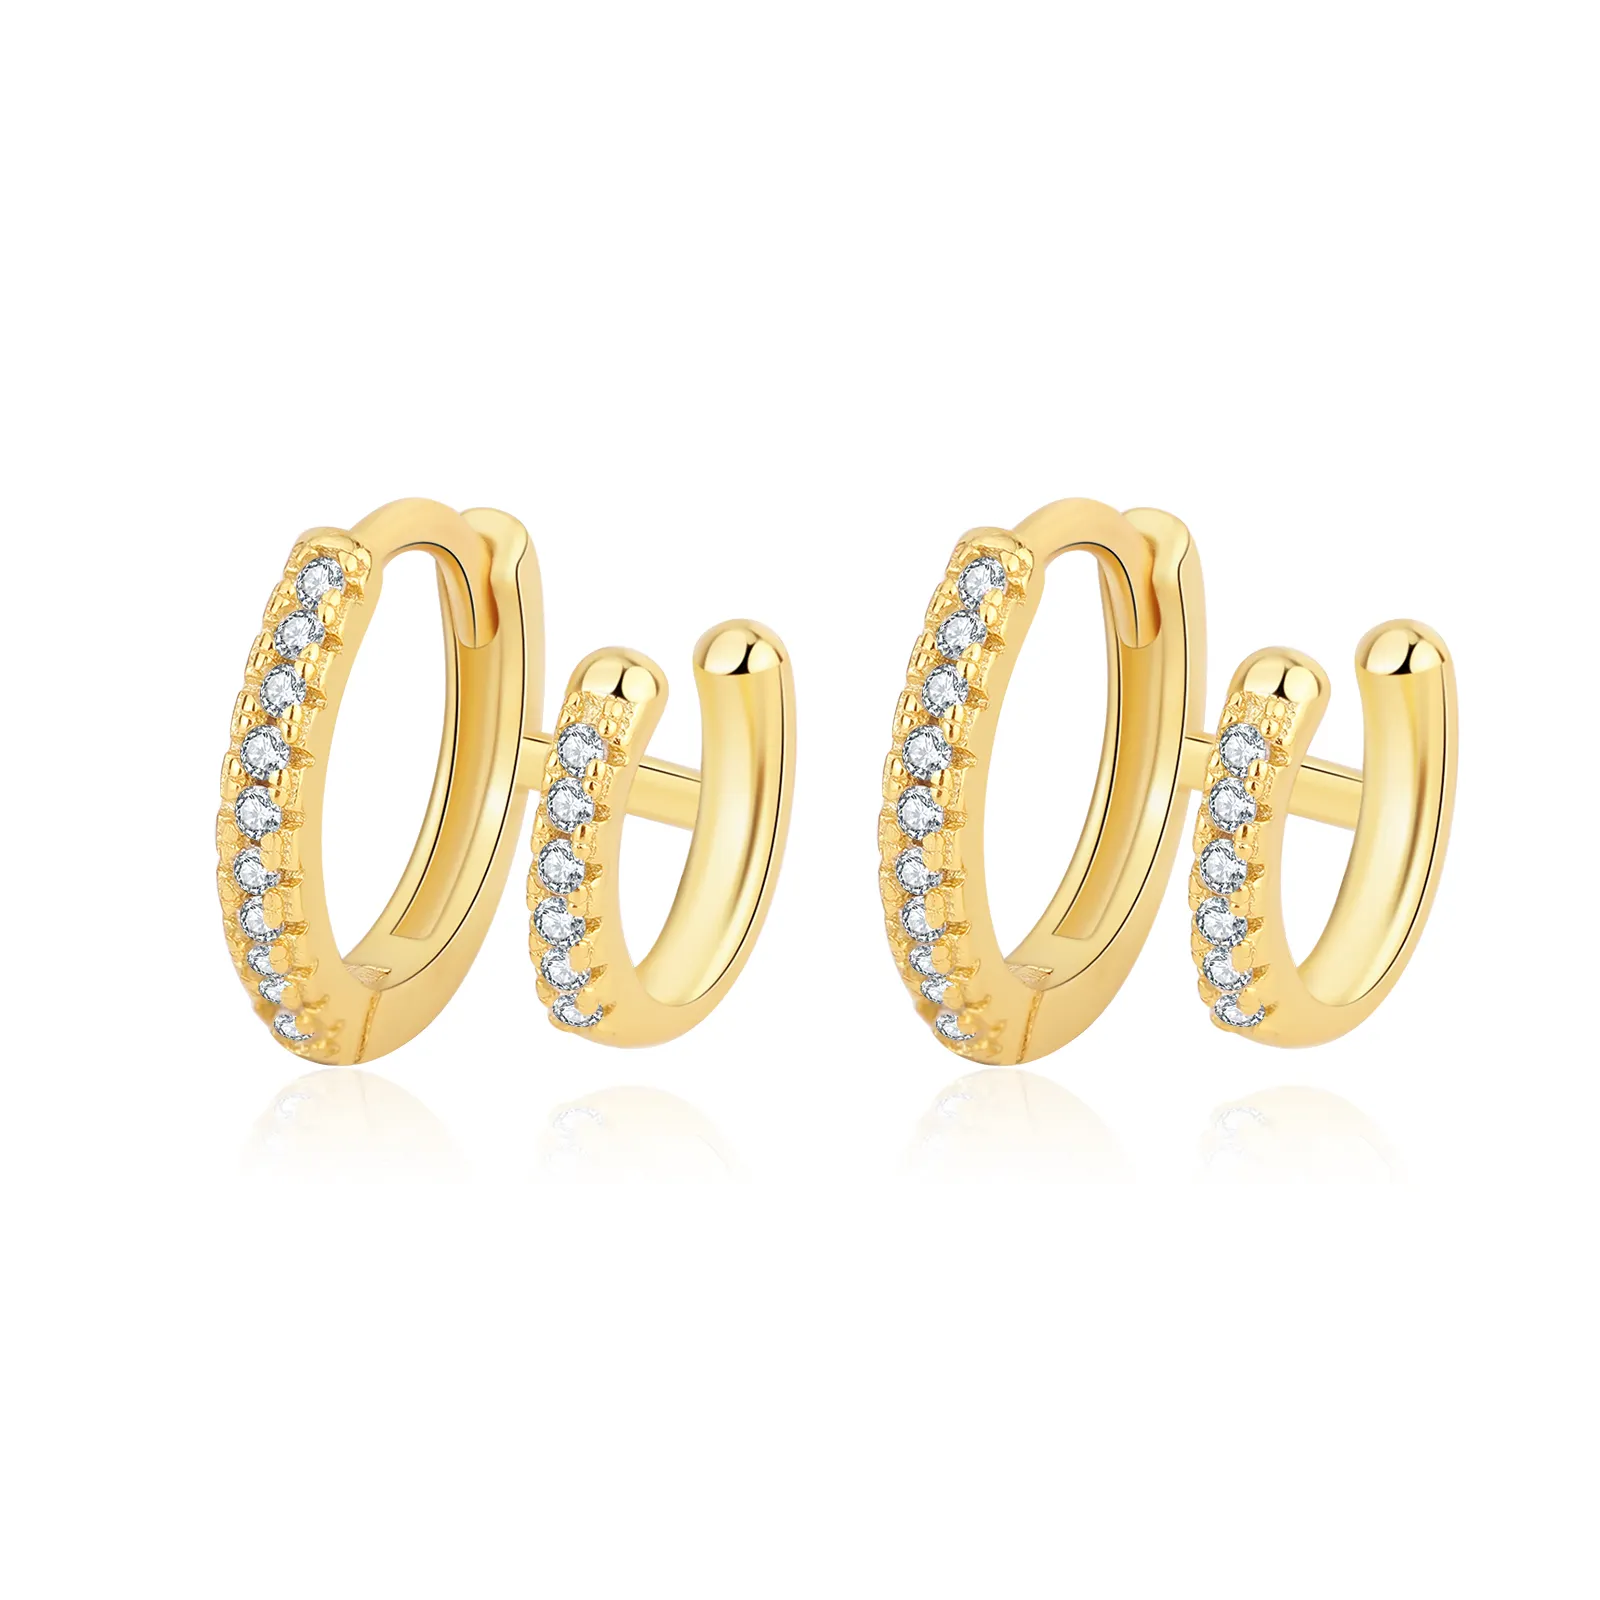 Designer Earrings Popular Brands Double Layered Hoop Earrings Zircon Women Gold Plated Earrings